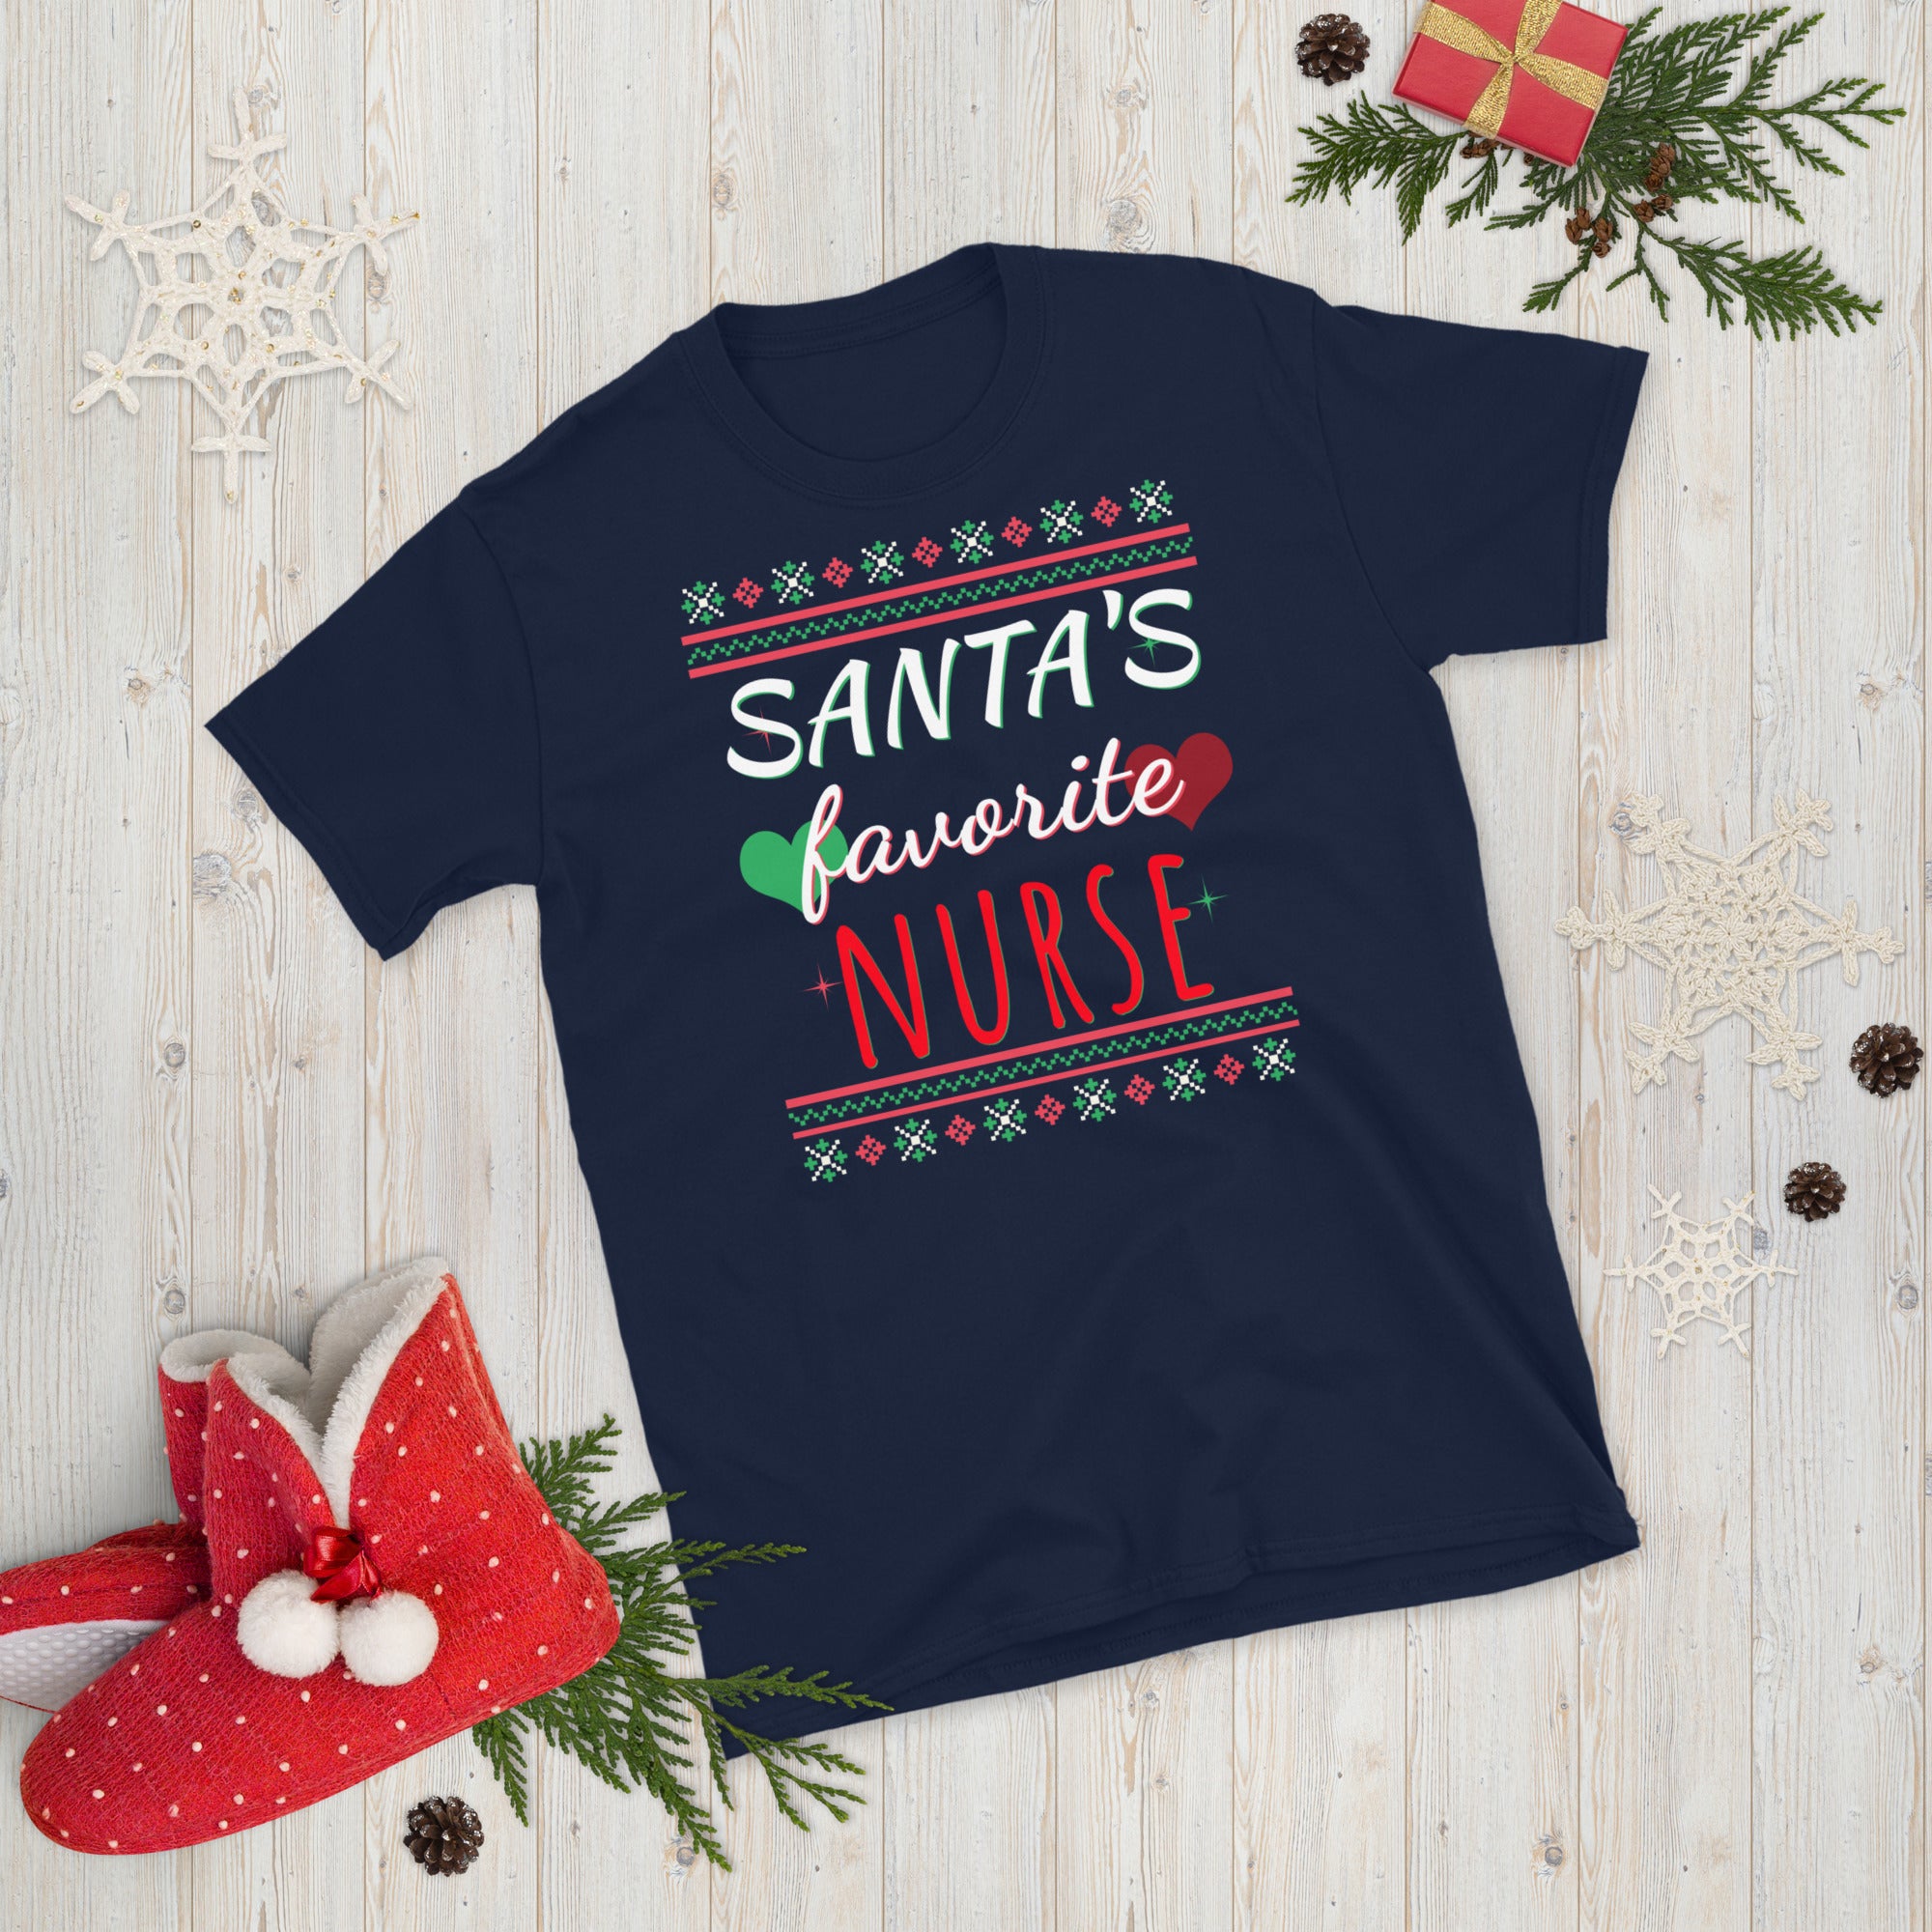 Santas Favorite Nurse, Nurse Christmas Shirt, Christmas Nursing Shirt, Nursing School T Shirt, Nursing School Tee, Nurse Shirt, Funny Nurse